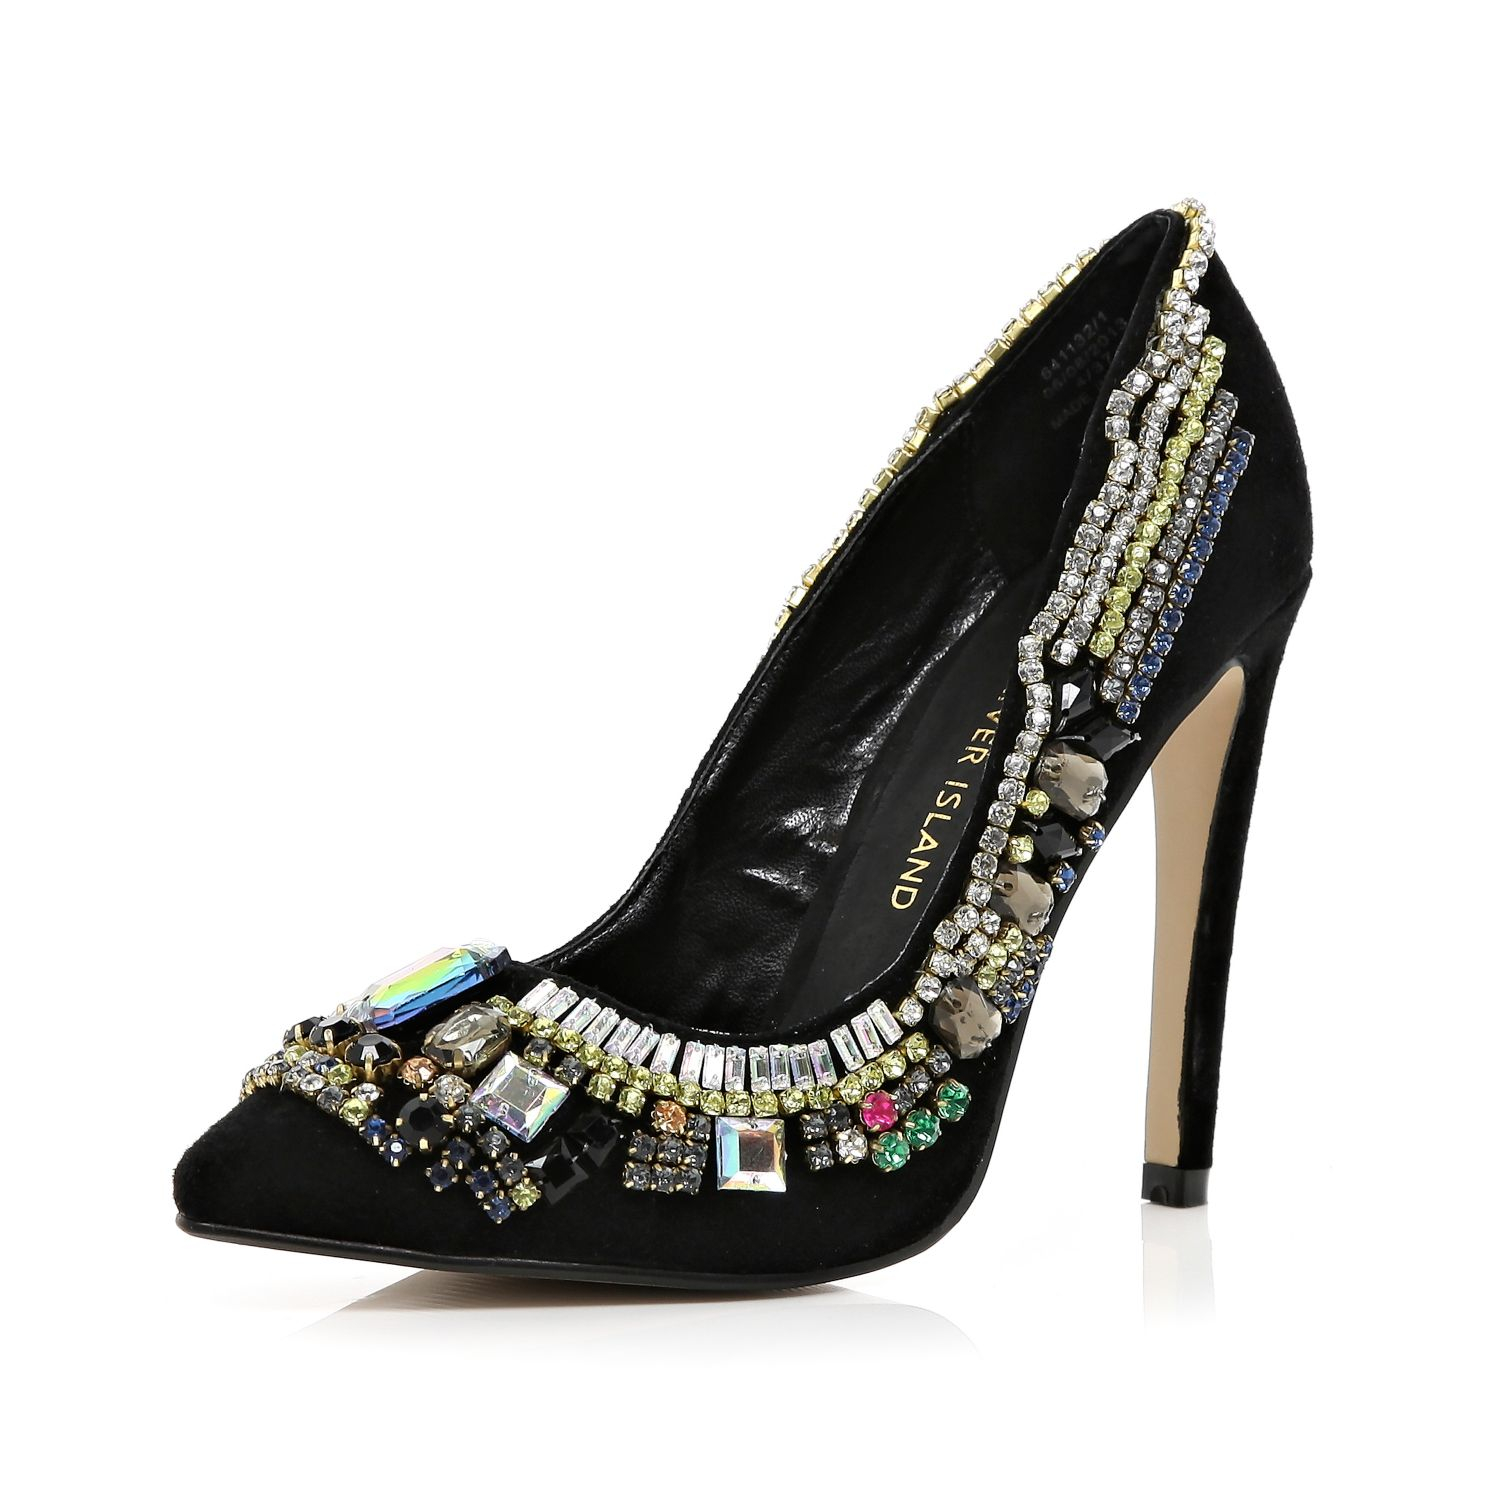 embellished black shoes